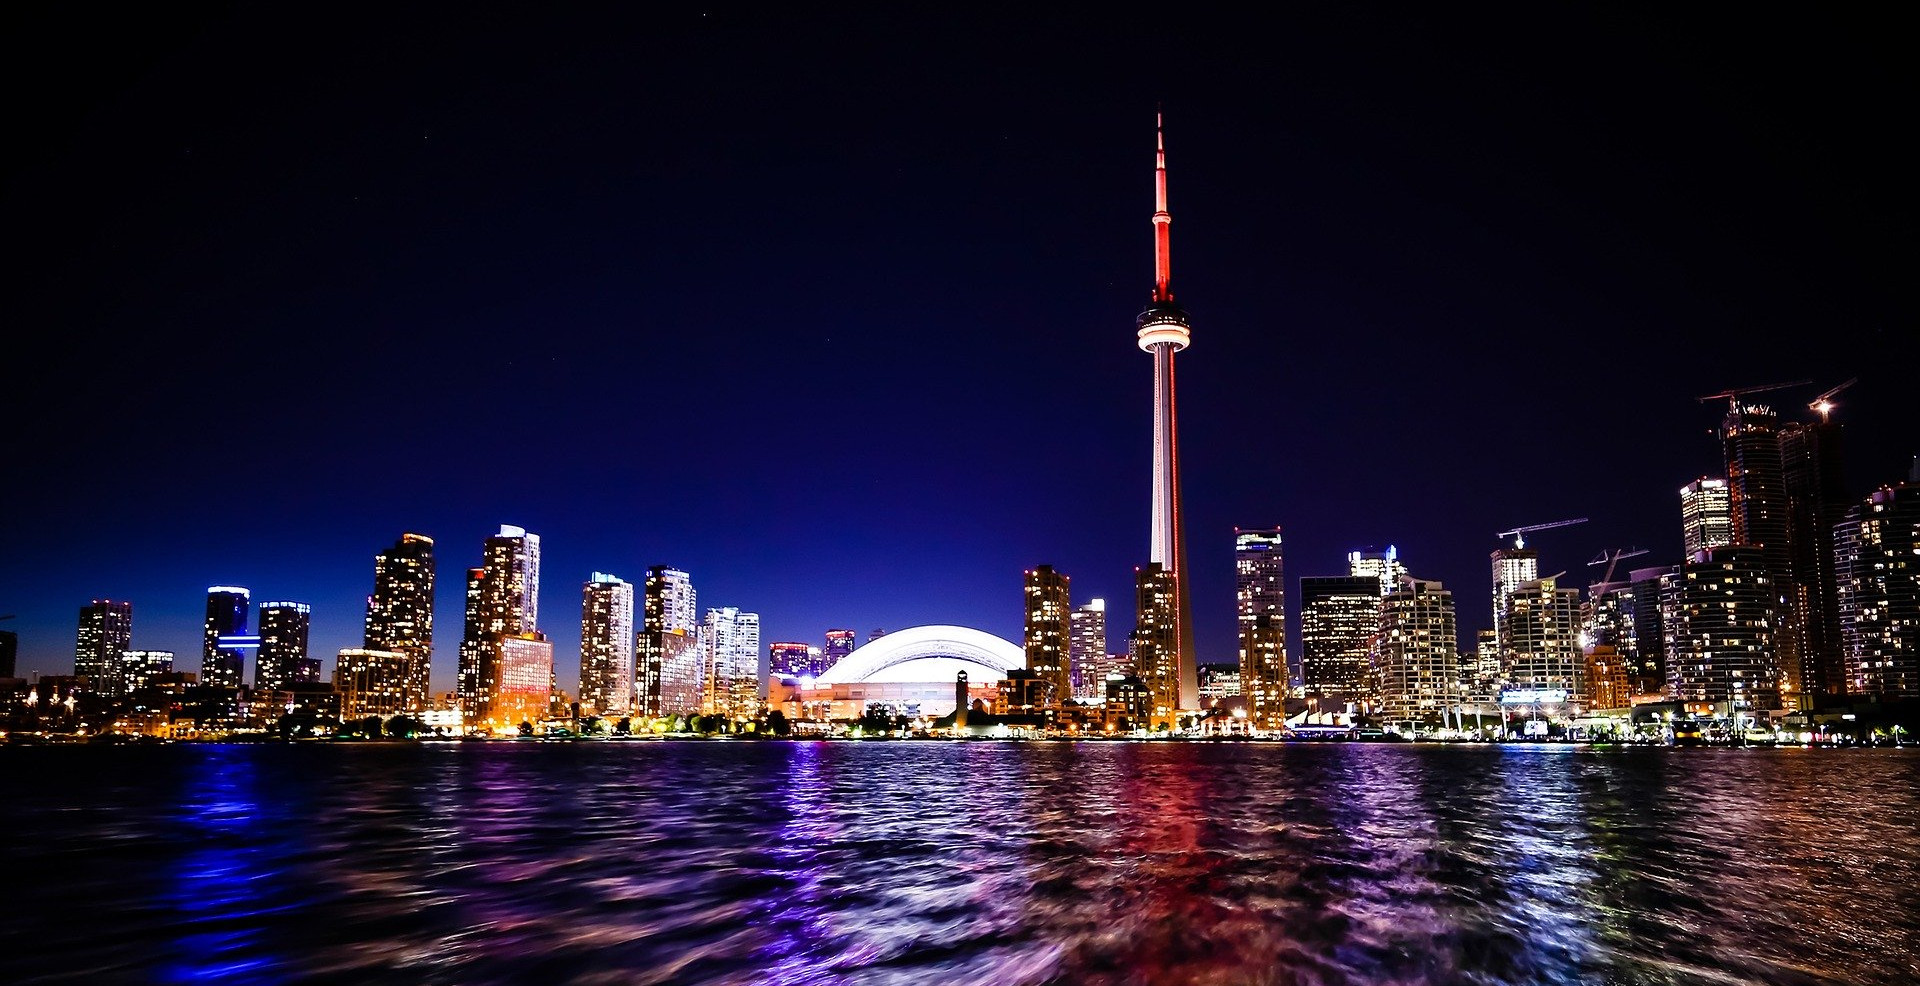 Image of Toronto Waterfront at night